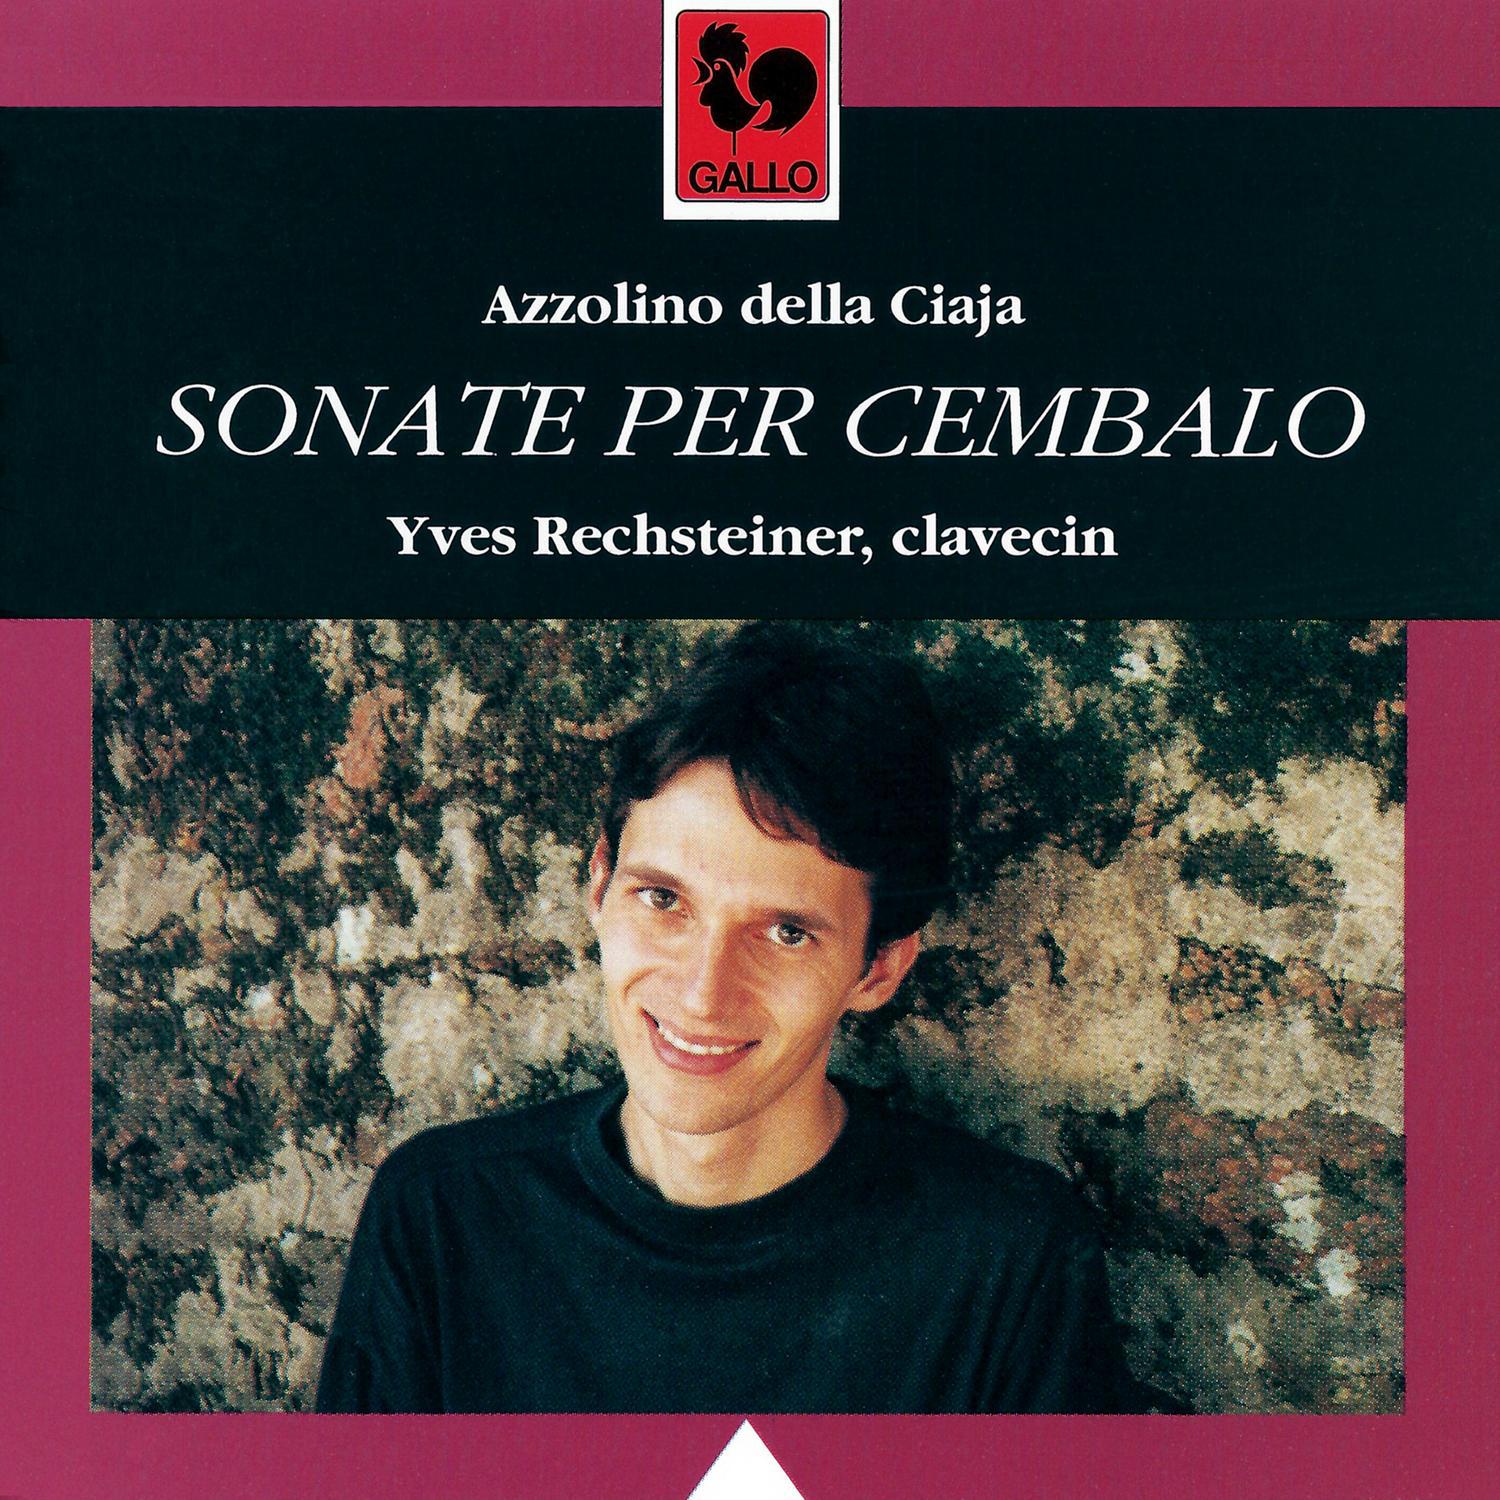 Azzolino Della Ciaja - Sonata Quarta in A Major: I. Toccata